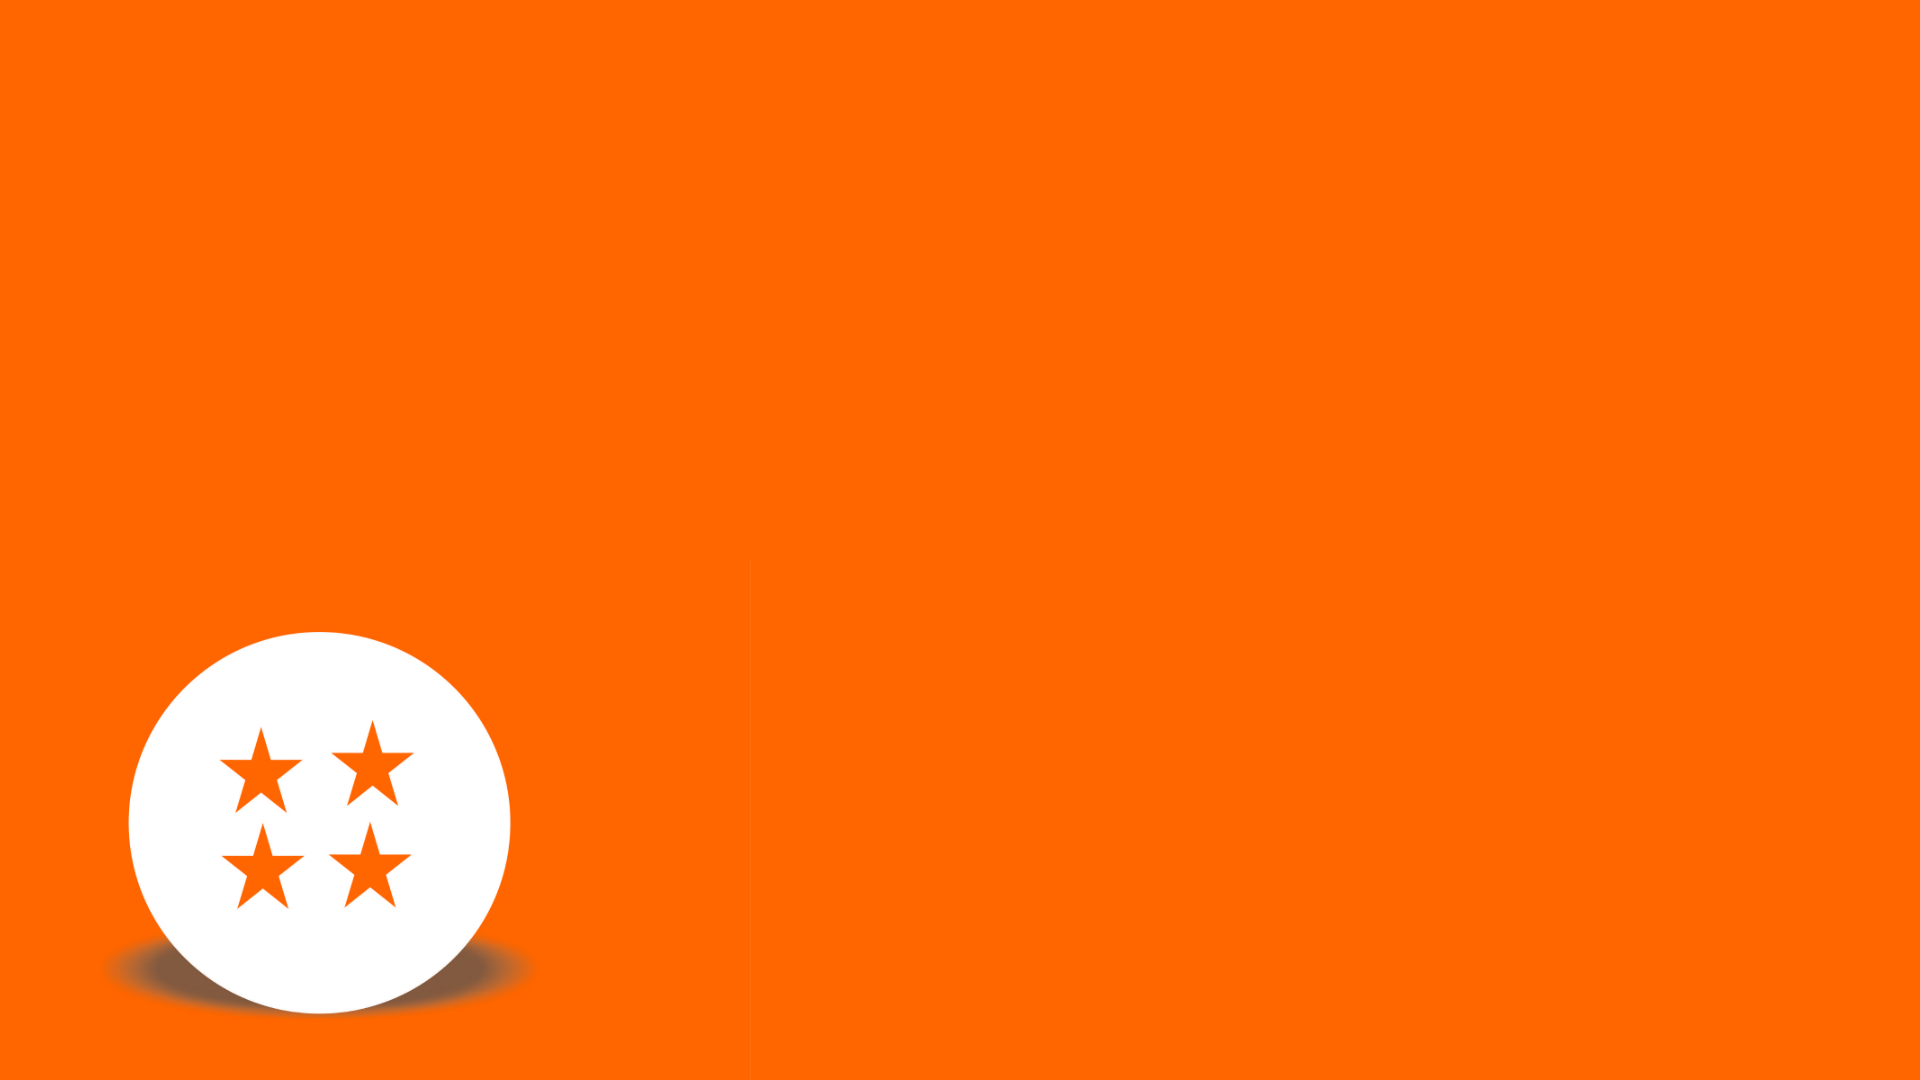 Orange Circle Computer Logo - Wallpaper : illustration, text, logo, orange, circle, Dragon Ball Z ...